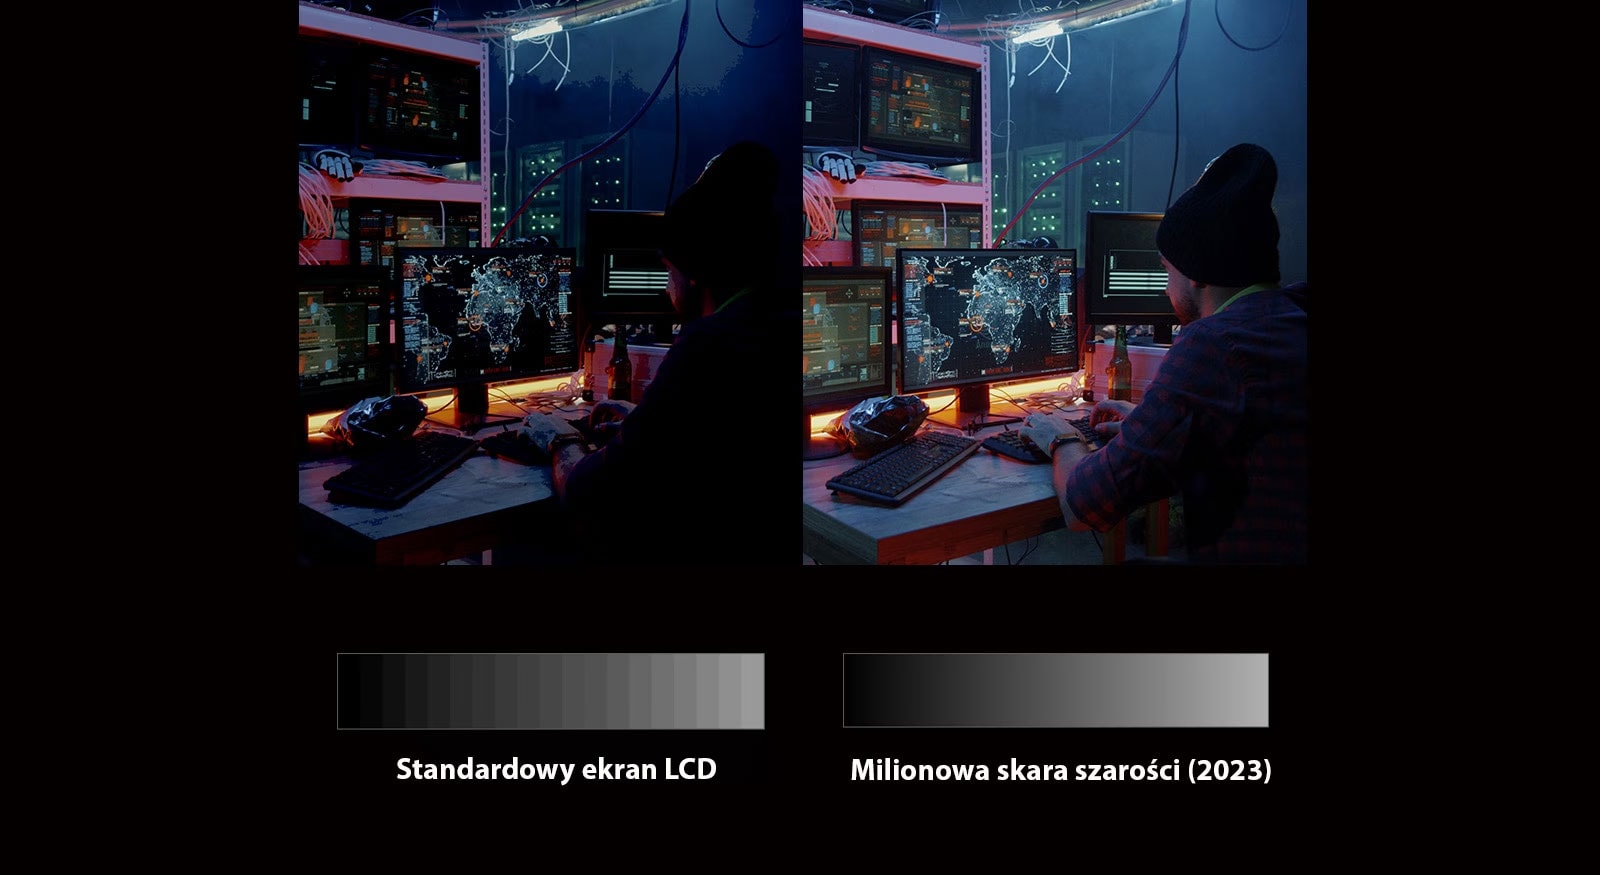 Na podzielonym ekranie widać mężczyznę patrzącego na lustro w ciemnym pokoju. Porównywana jest różnica w jakości obrazu między lewą i prawą stroną.